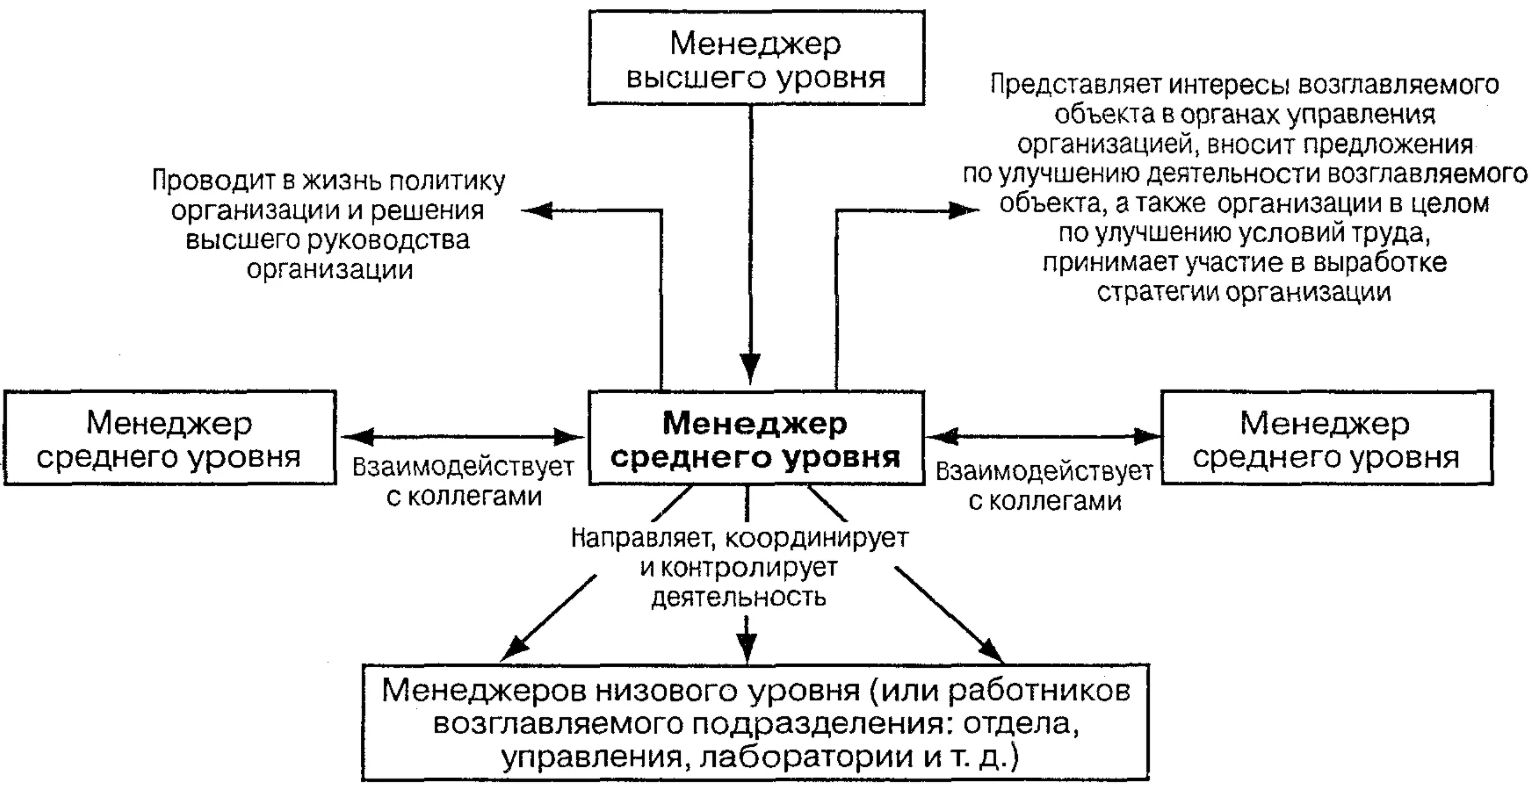 Особенности управления организациями в современных условиях и пути его совершенствования - Организационная структура компании